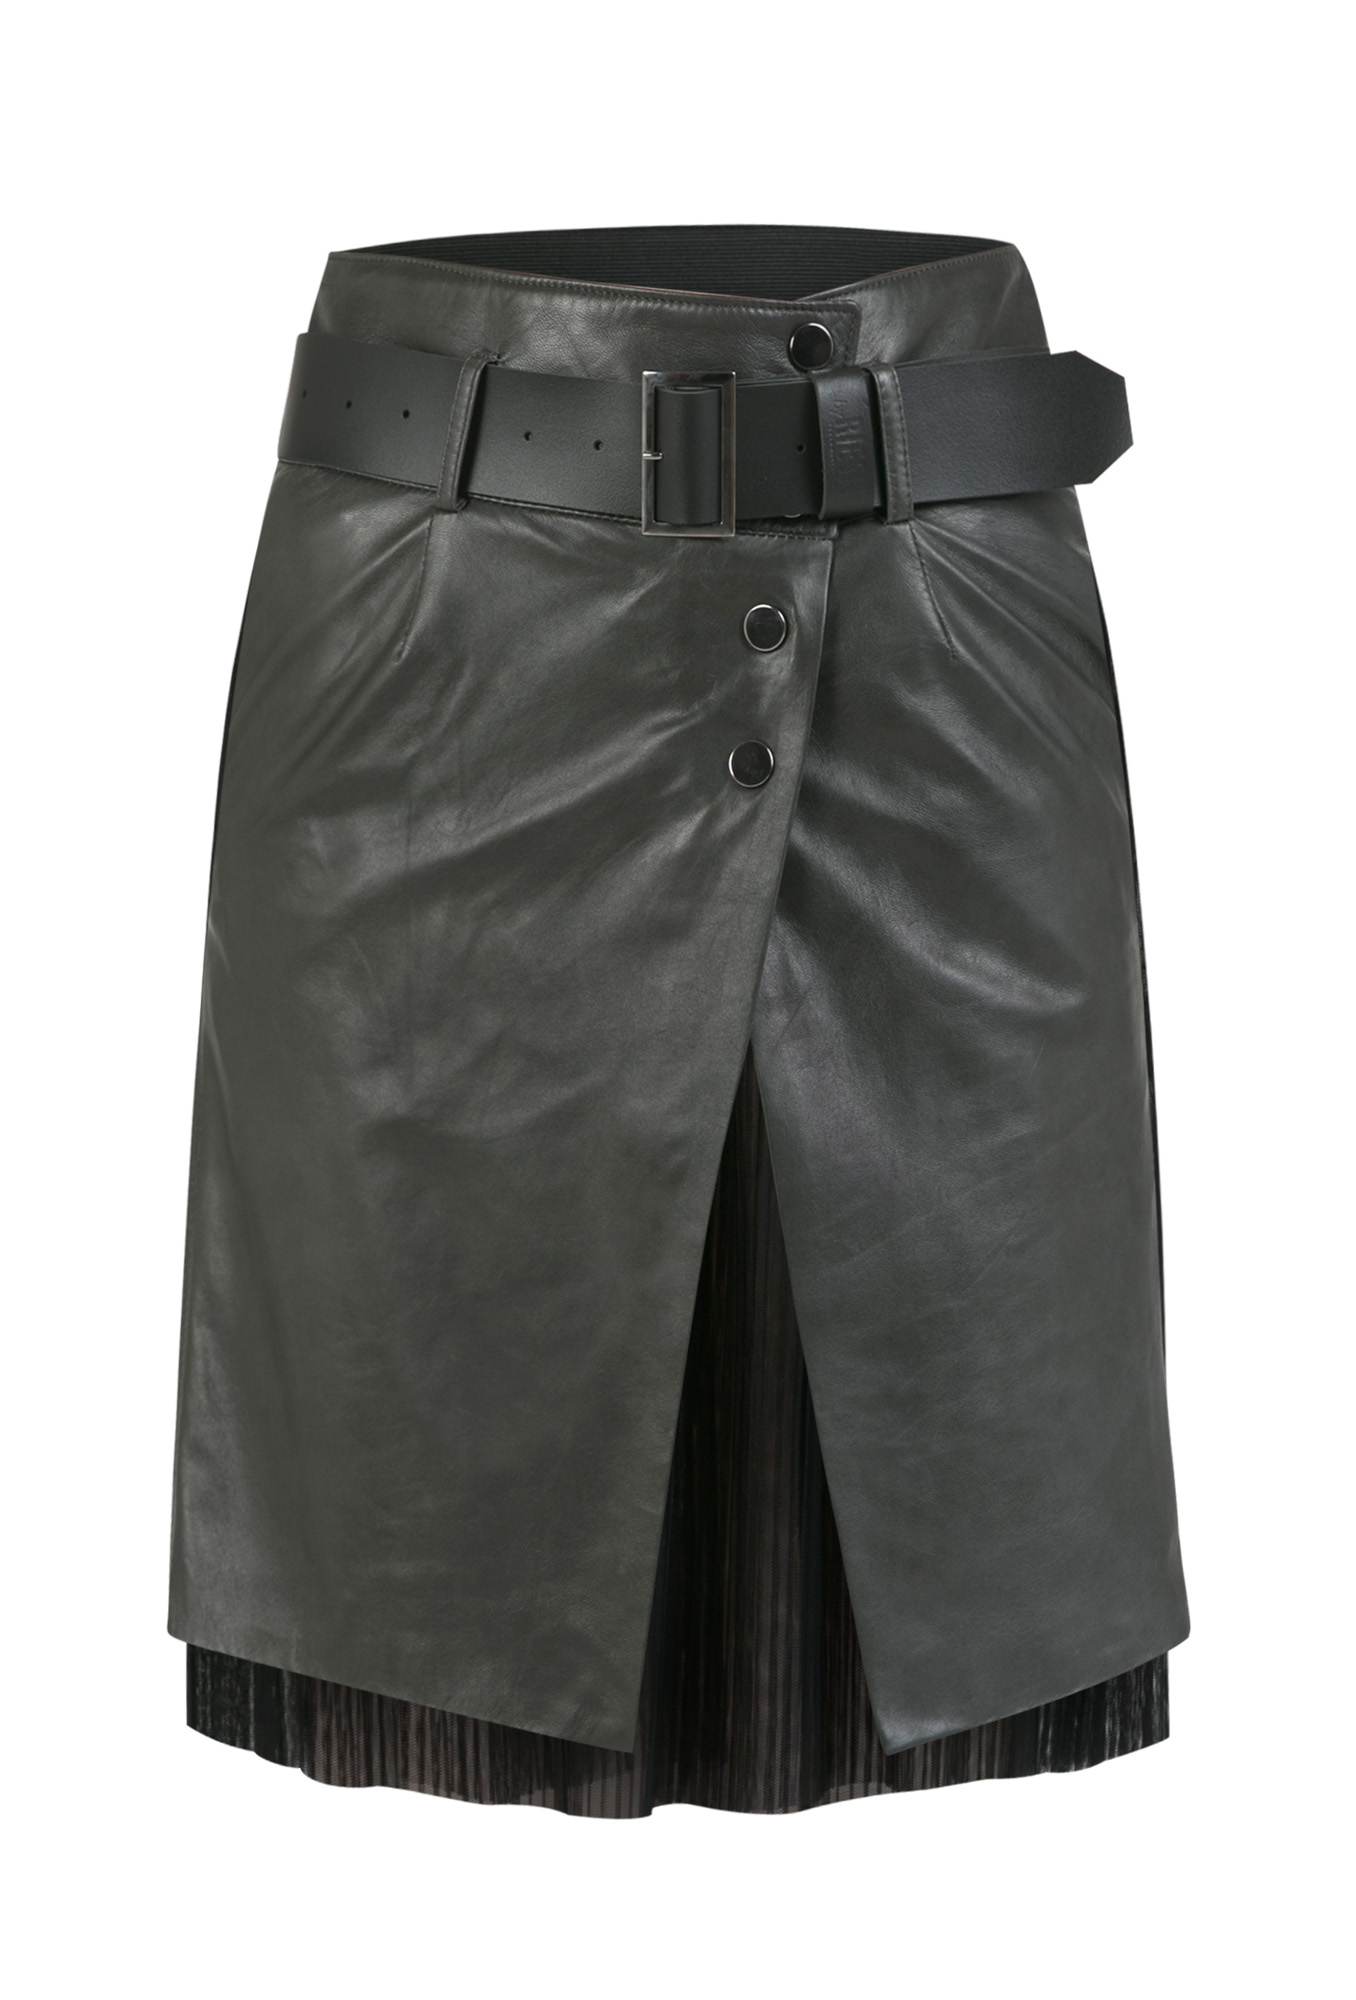 leather skirt, leather skirt with leather strap, gray leather skirt, gray leather skirt with petticoat, Italian leather skirt, natural leather skirt, gray leather skirt, leather skirts with belt, premium